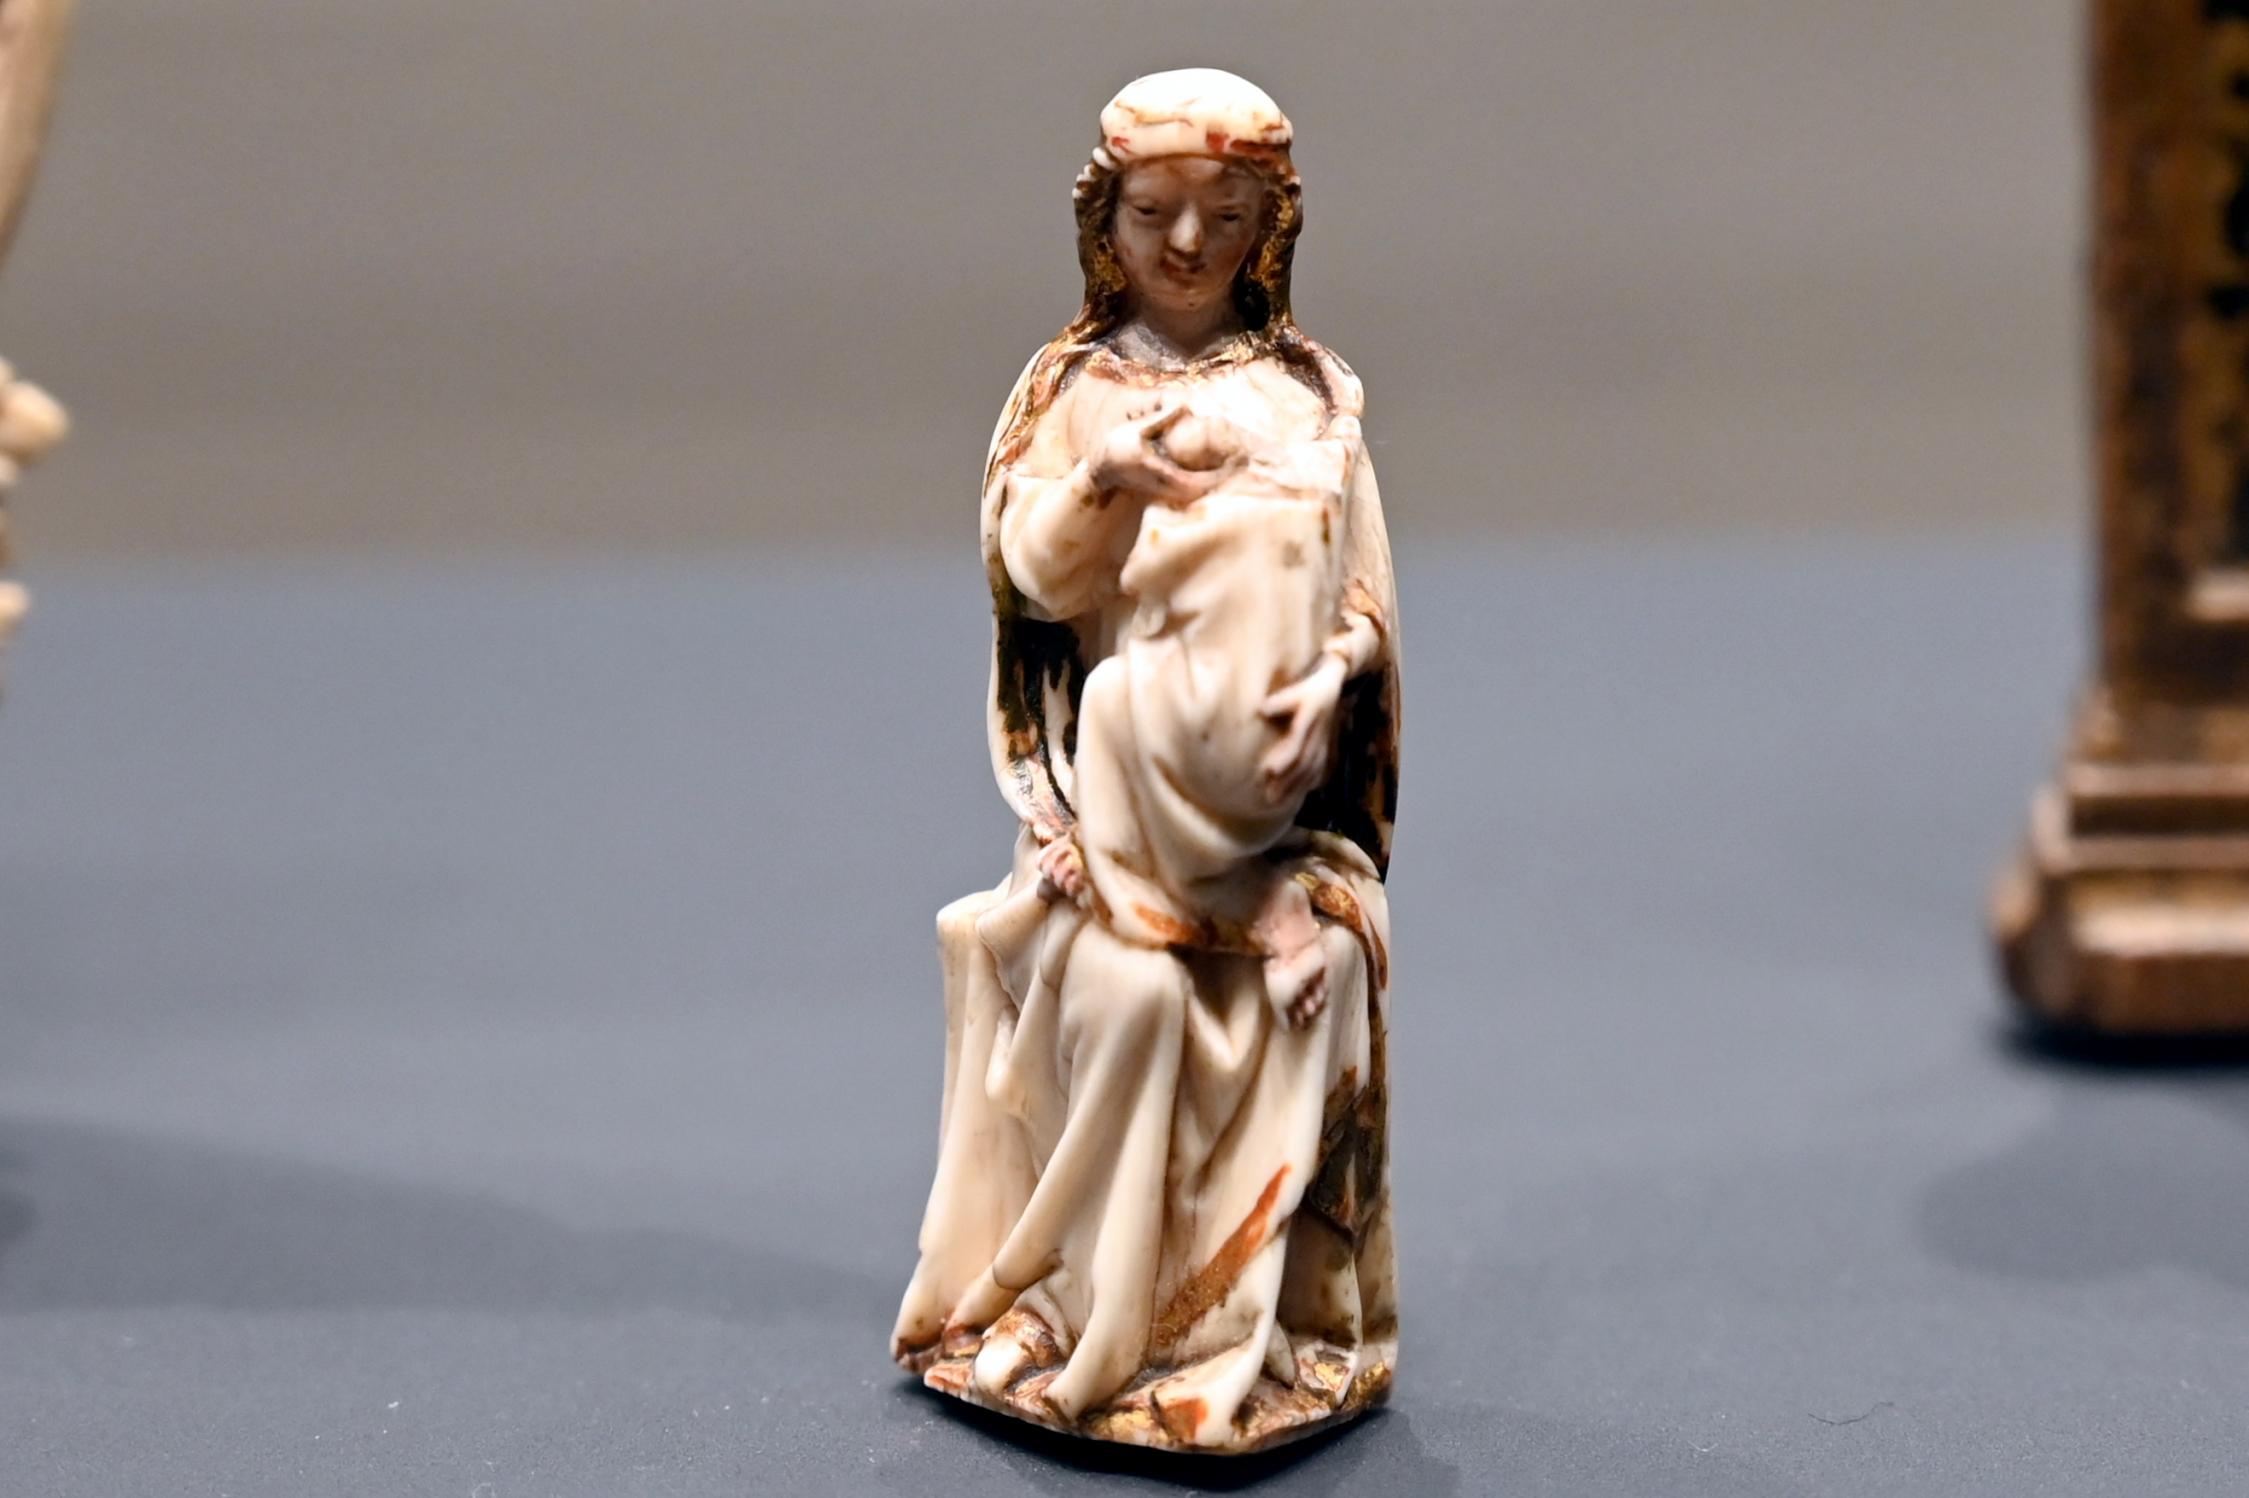 Kleine Maria lactans (Stillende Maria), Darmstadt, Hessisches Landesmuseum, Kirchliche Schatzkammer, Ende 14. Jhd.